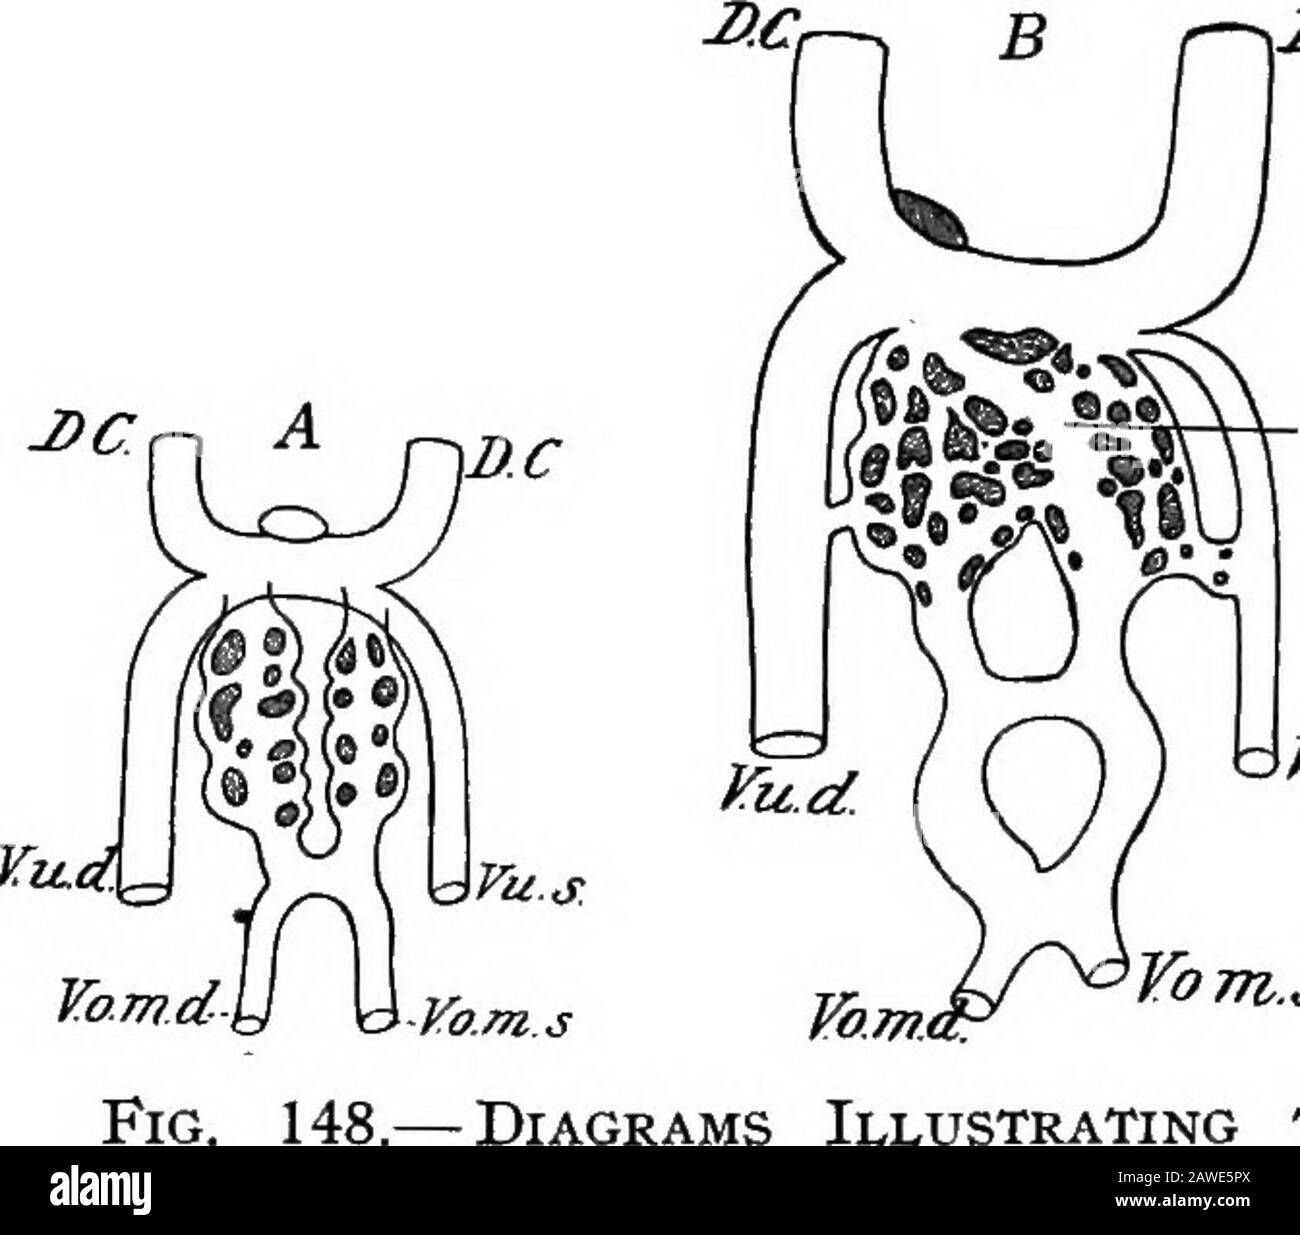 Lo sviluppo del corpo umano; un manuale di embriologia umana. Etwork (Fig. 148, A) attraversare la sostanza epatica e unitingagain per formare due steli che rappresentano le caratteristiche originali delle omphalo-mesenteriche. Dal punto in cui il tronco comune formato dalle vene omphalo-mesenteriche e ombelicali di destra si apre nel Cuvieriandotto si sviluppa una nuova vena, che passa verso il basso e si unisce con l'omphalo-mesenterico di sinistra; questo è il dotto venosus (Fig. 148, B, DVA). Nel tempo medio sono state sviluppate tre connessioni incrociate tra il two24 282 LO SVILUPPO del BOD UMANO Foto Stock